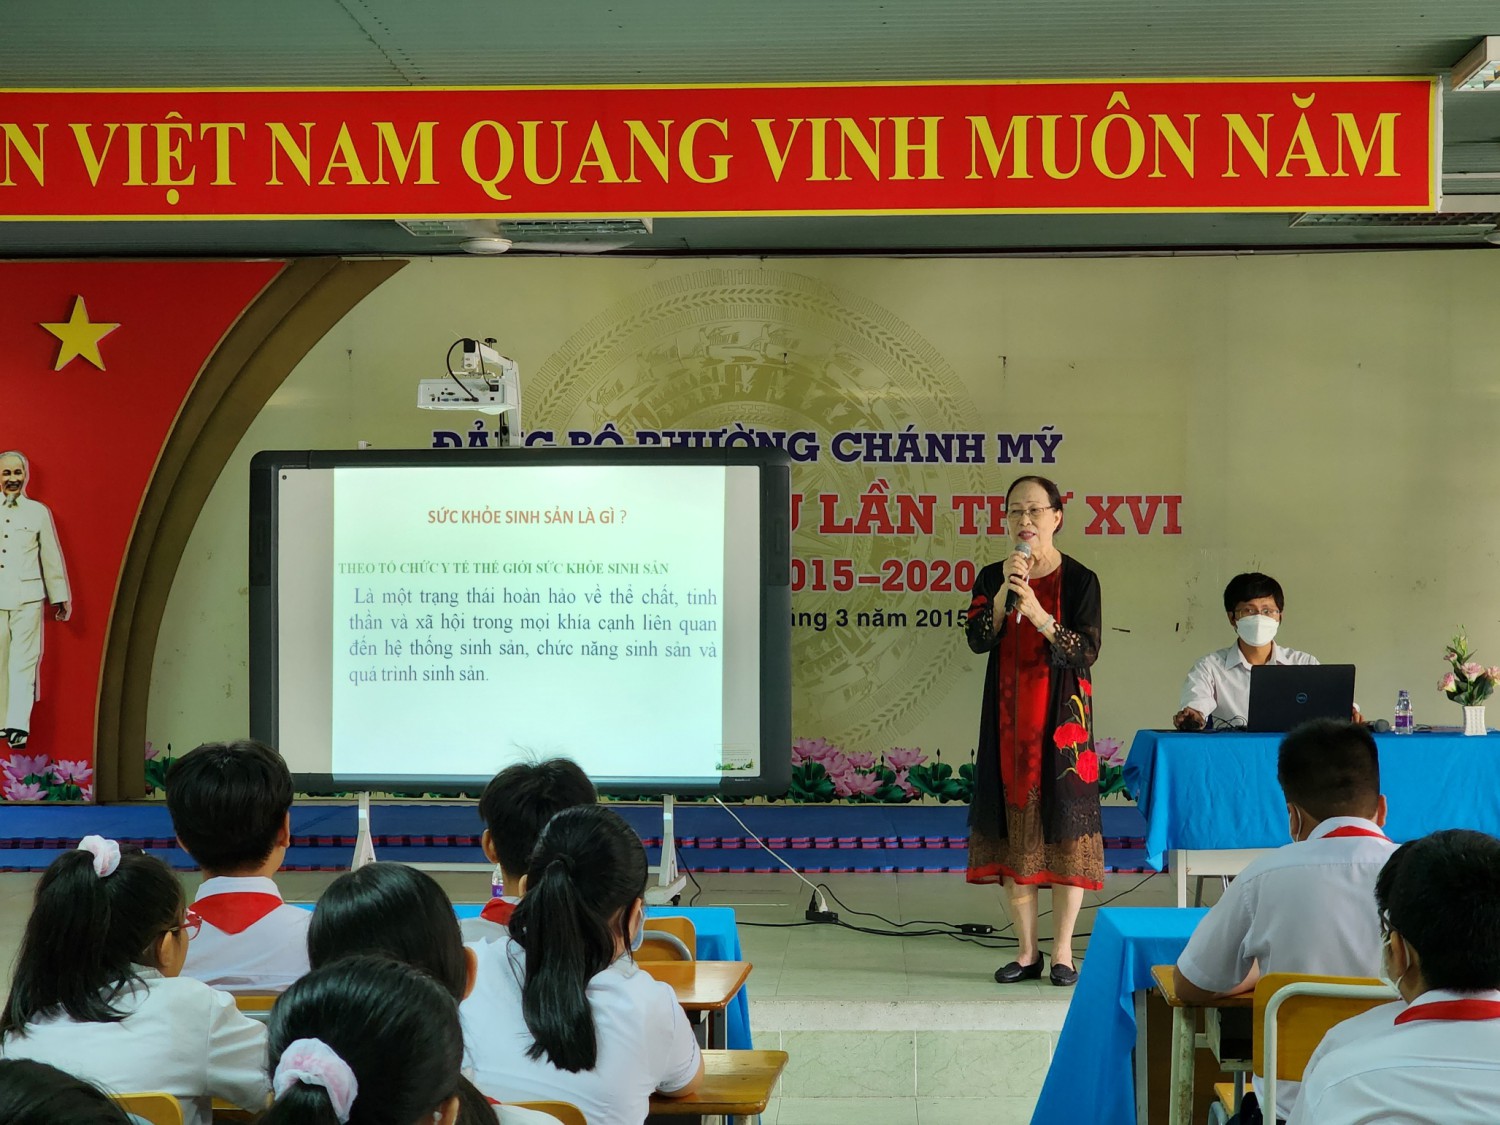 Hội kế hoạch hóa gia đình tỉnh Bình Dương truyền thông chăm sóc sức khỏe sinh sản cho vị thành niên, thanh niên cho học sinh trường THCS Nguyễn Văn Cừ